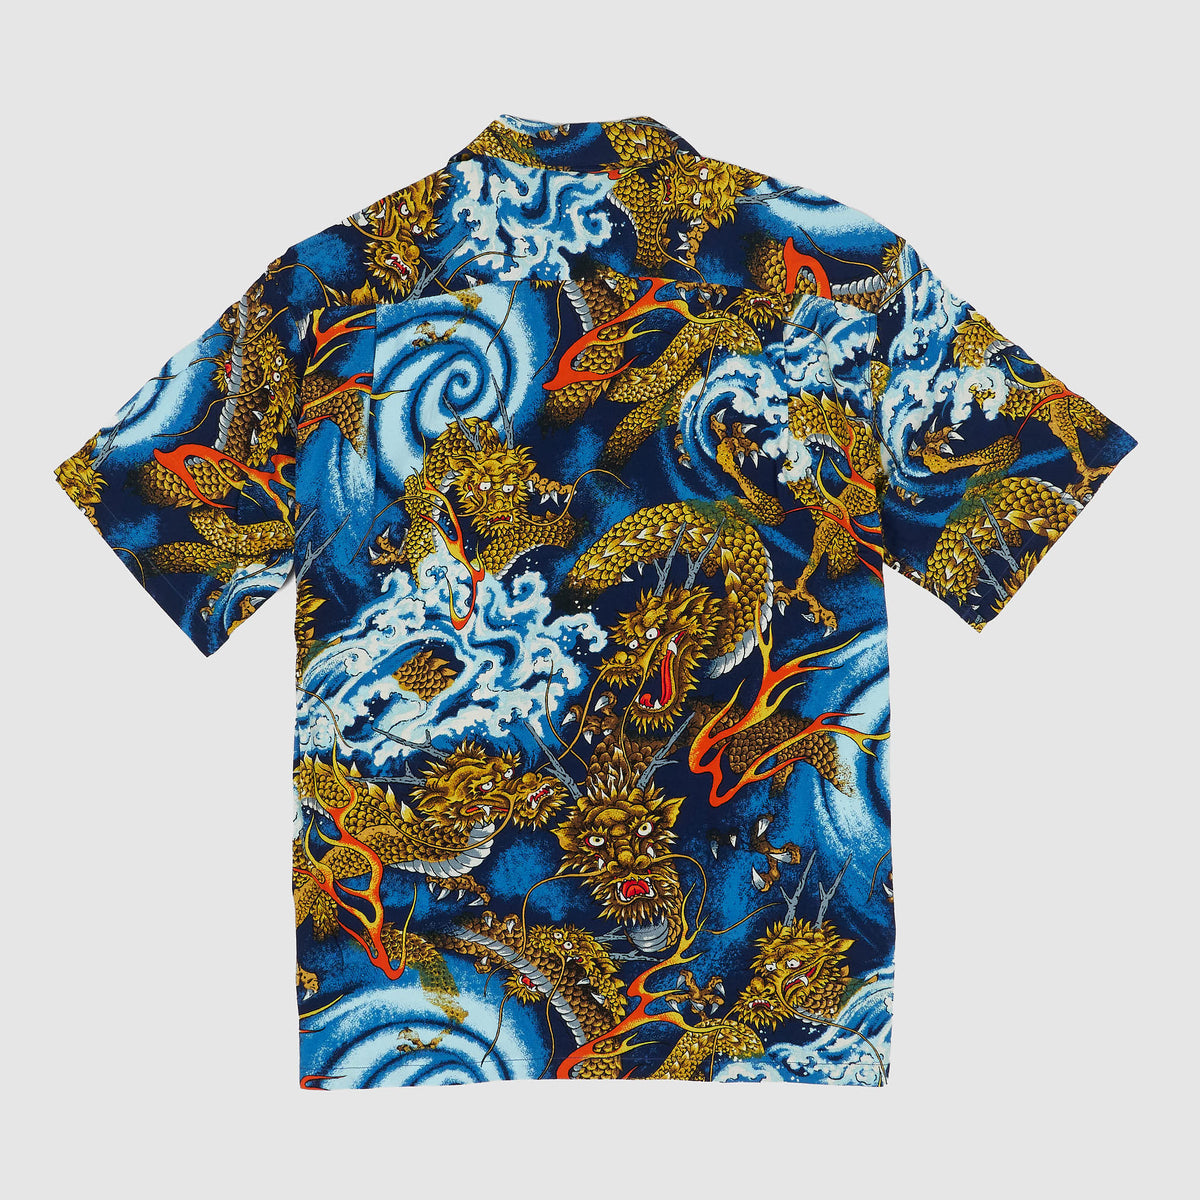 Sun Surf Limited Edition Keoni of HawaiiDragon Short Sleeve Shirt